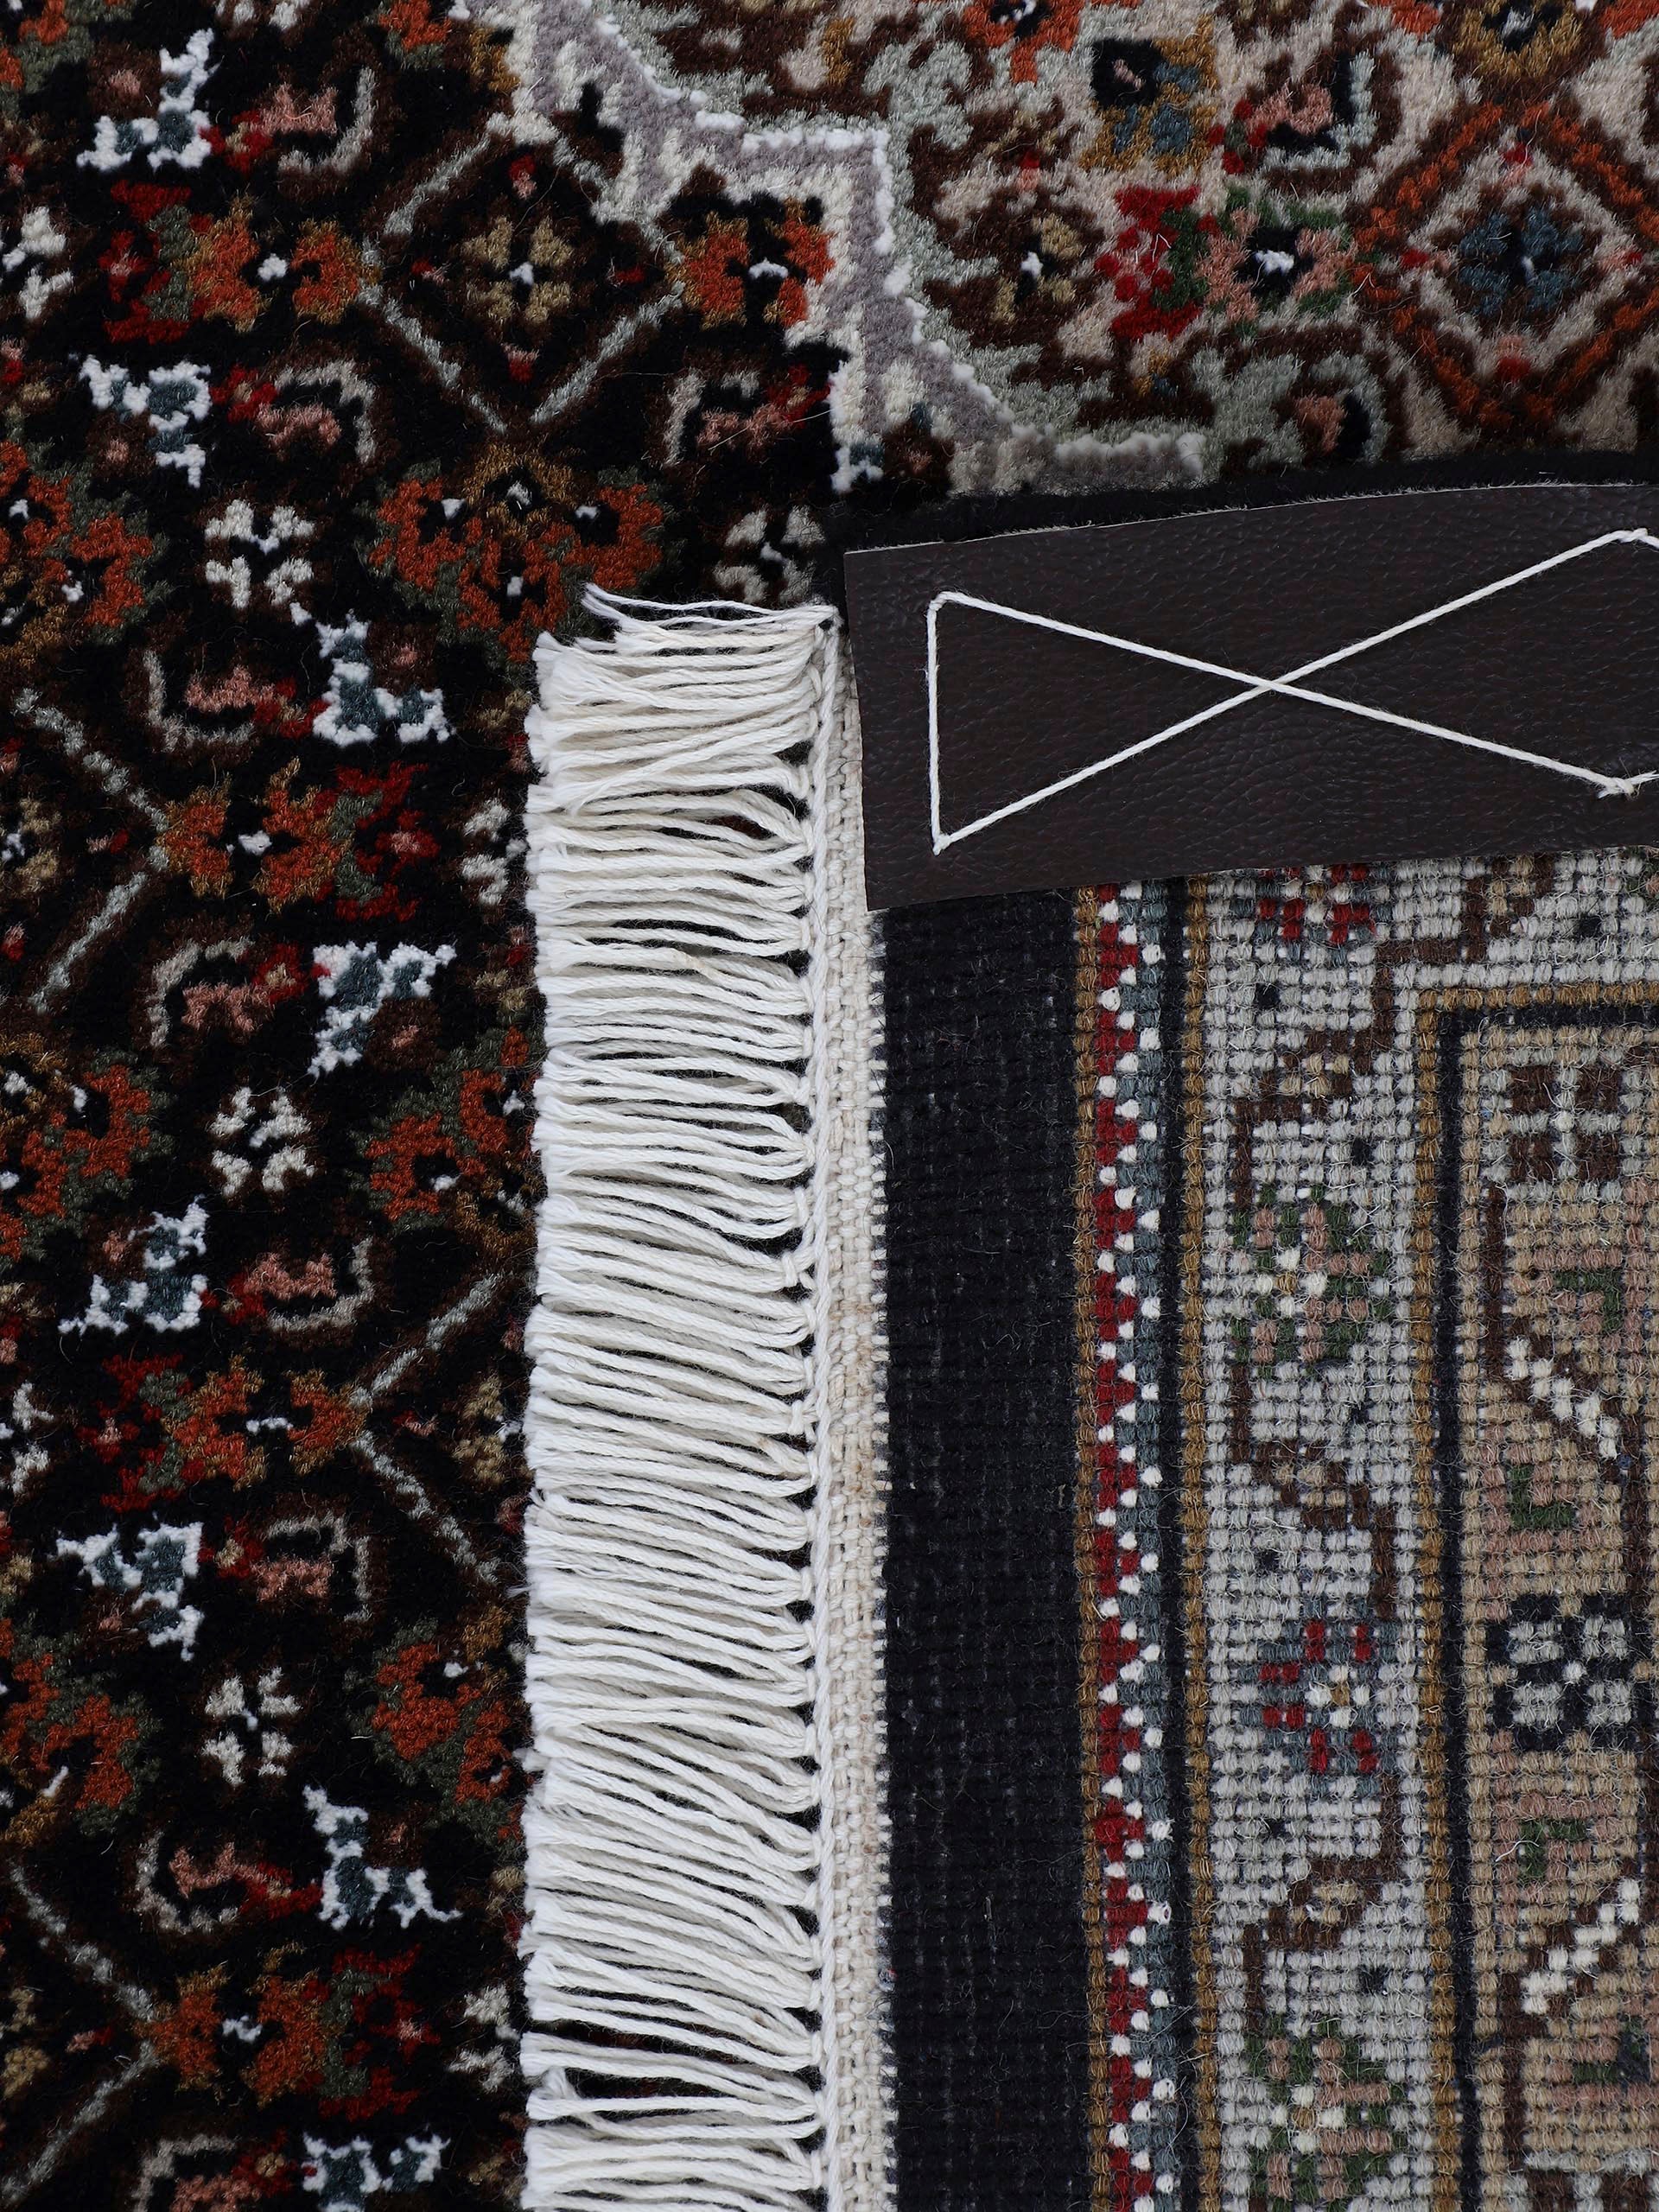 Woven Arts Orientteppich »Tabriz Mahi«, rechteckig, handgeknüpft, Wohnzimmer, reine Wolle